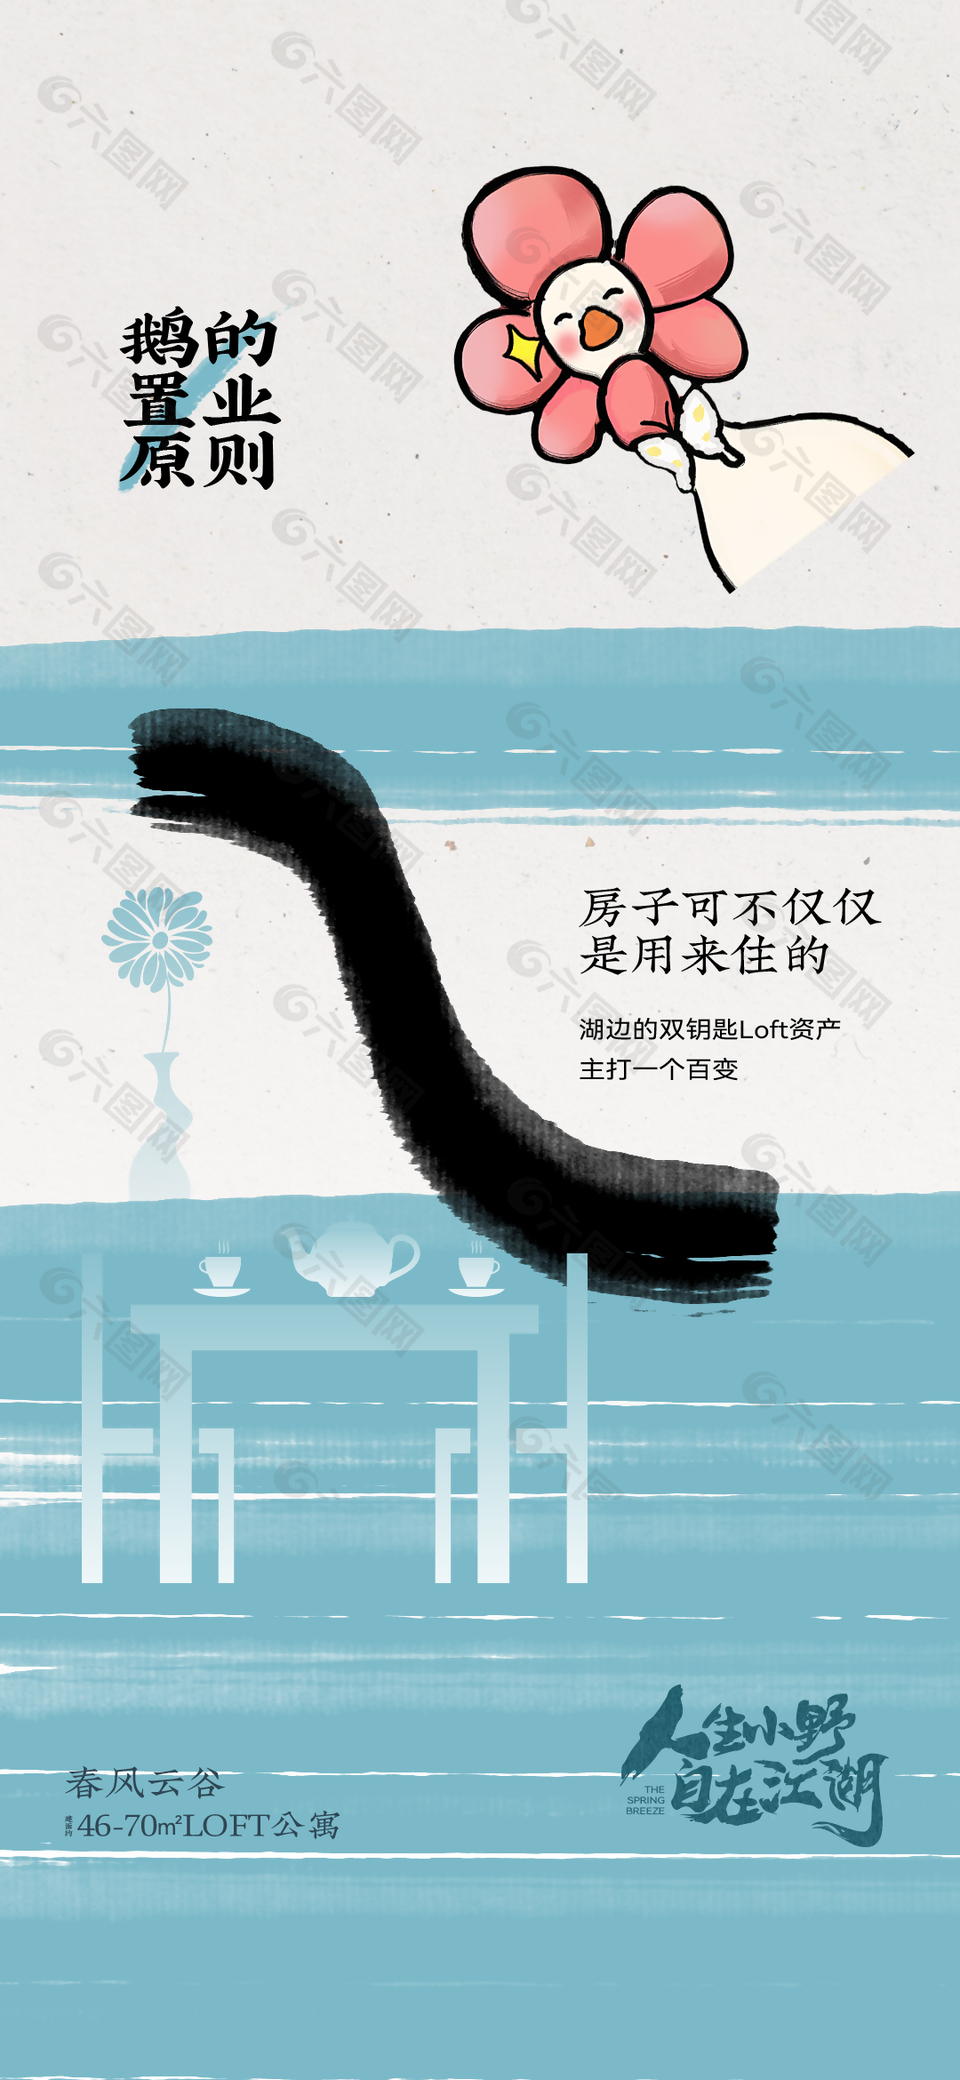 自在江湖趣味插画蓝色背景地产海报